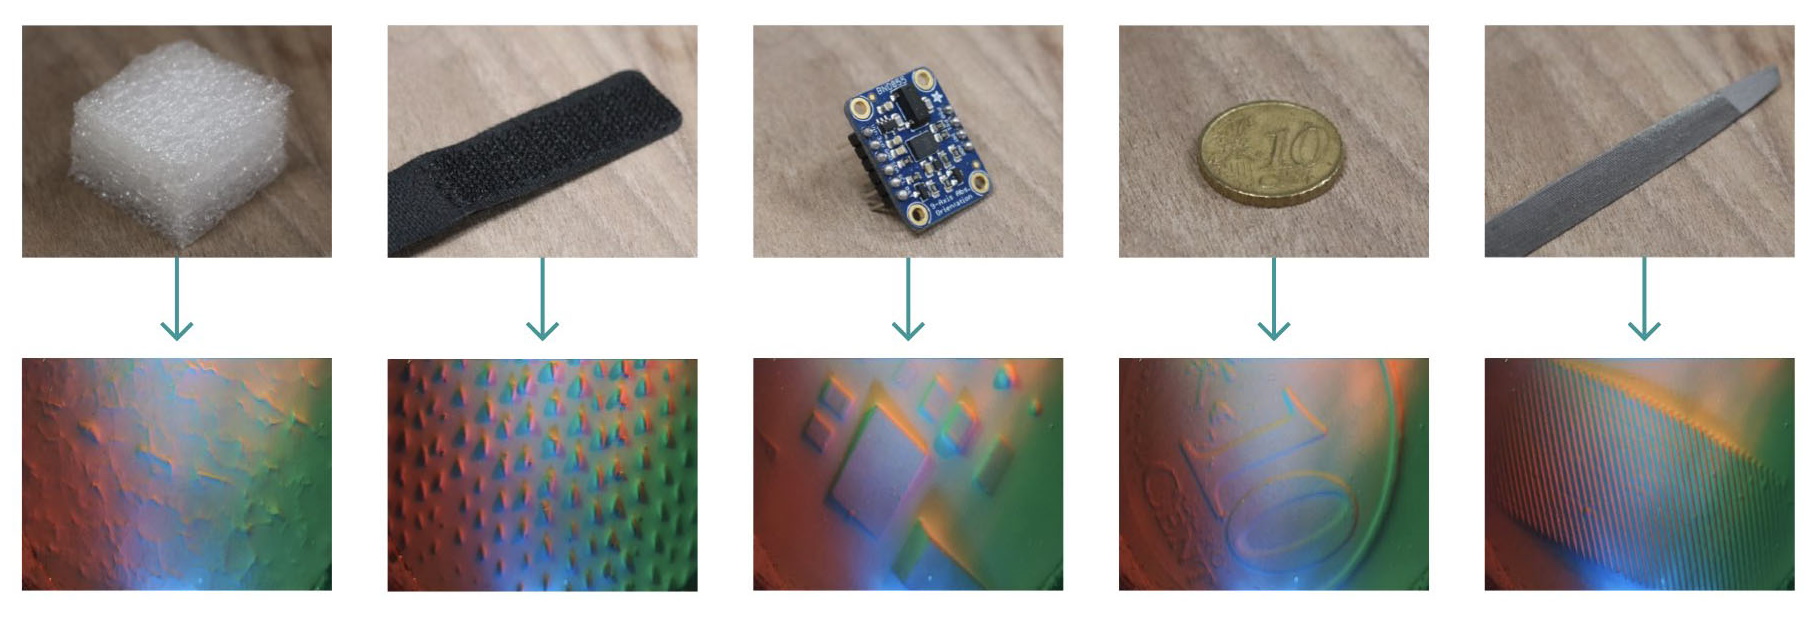 Objetos que se muestran encima de las imágenes de las señales producidas por la yema del dedo robótico.